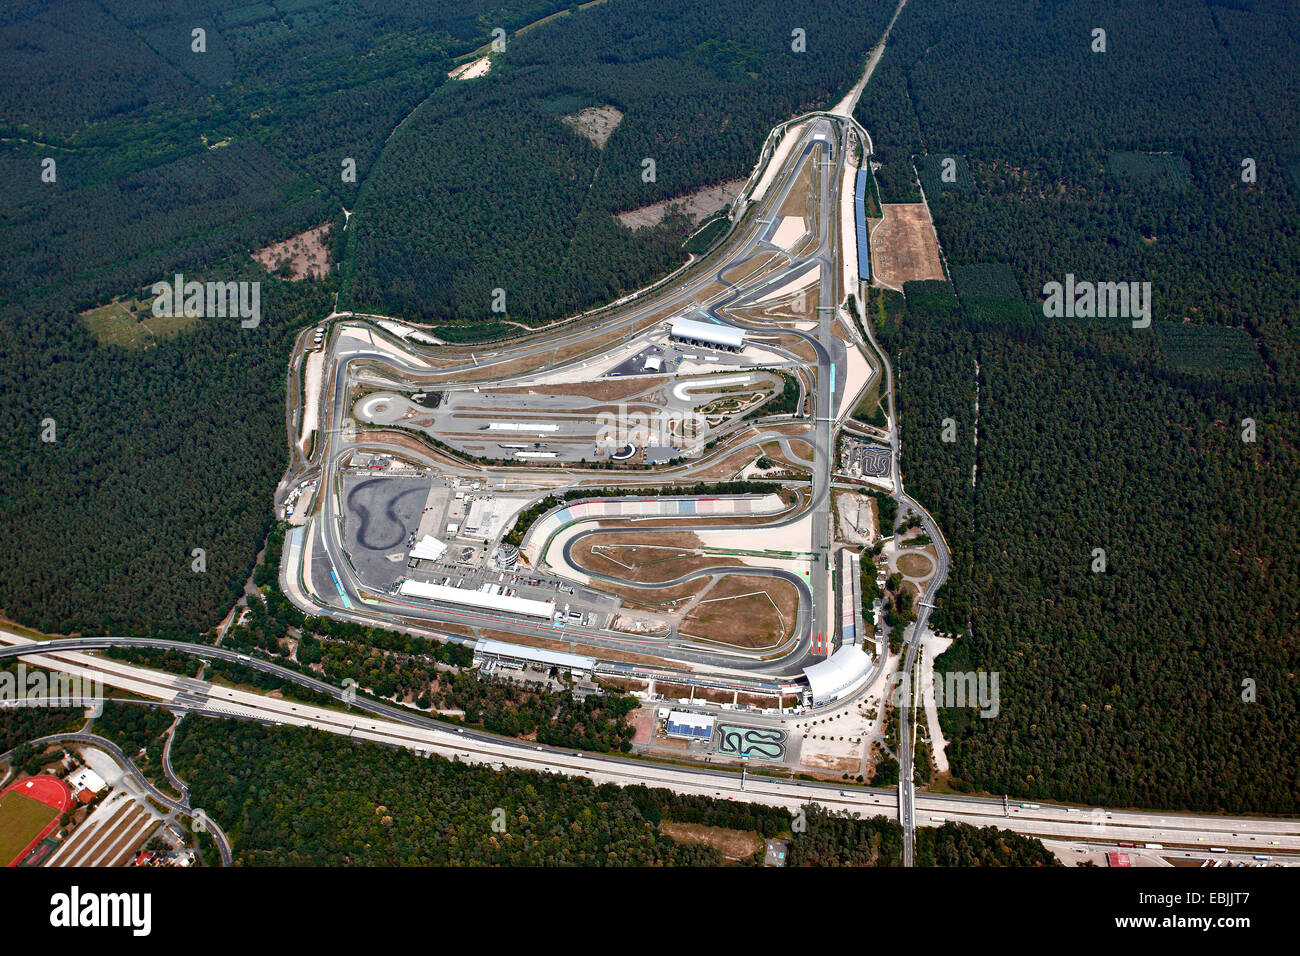 Vista aérea del circuito de carreras de automovilismo Hockenheimring, Alemania Baden-Wurtemberg, Hockenheim Foto de stock